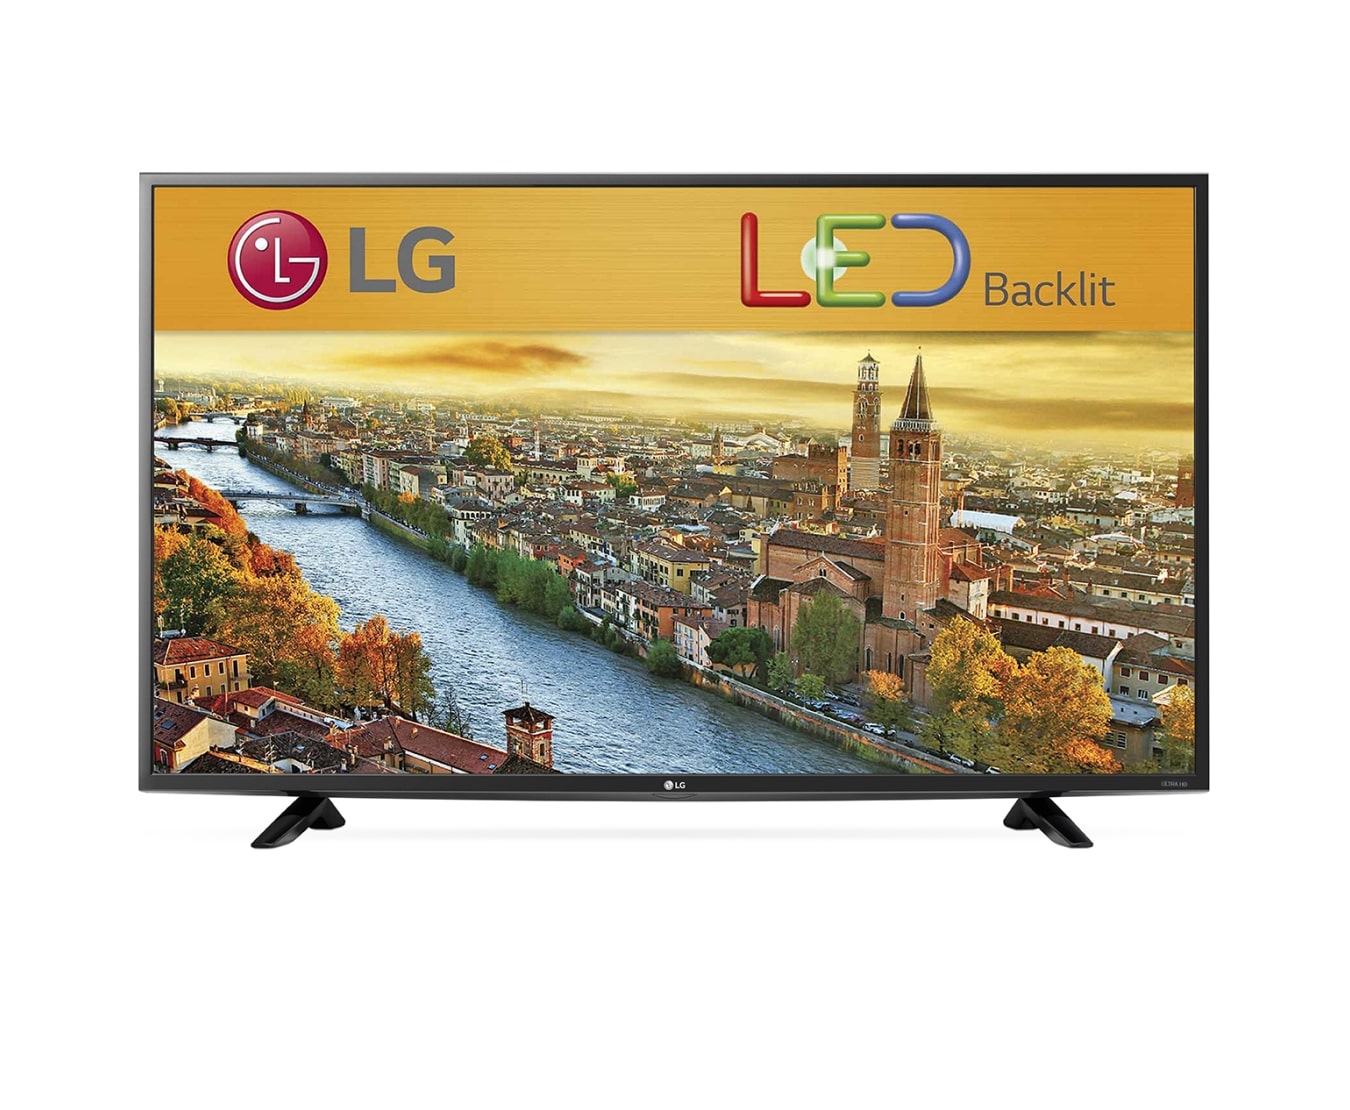 LG FULL HD LED LCD 40 inch TV 43LF5100 | LG New Zealand